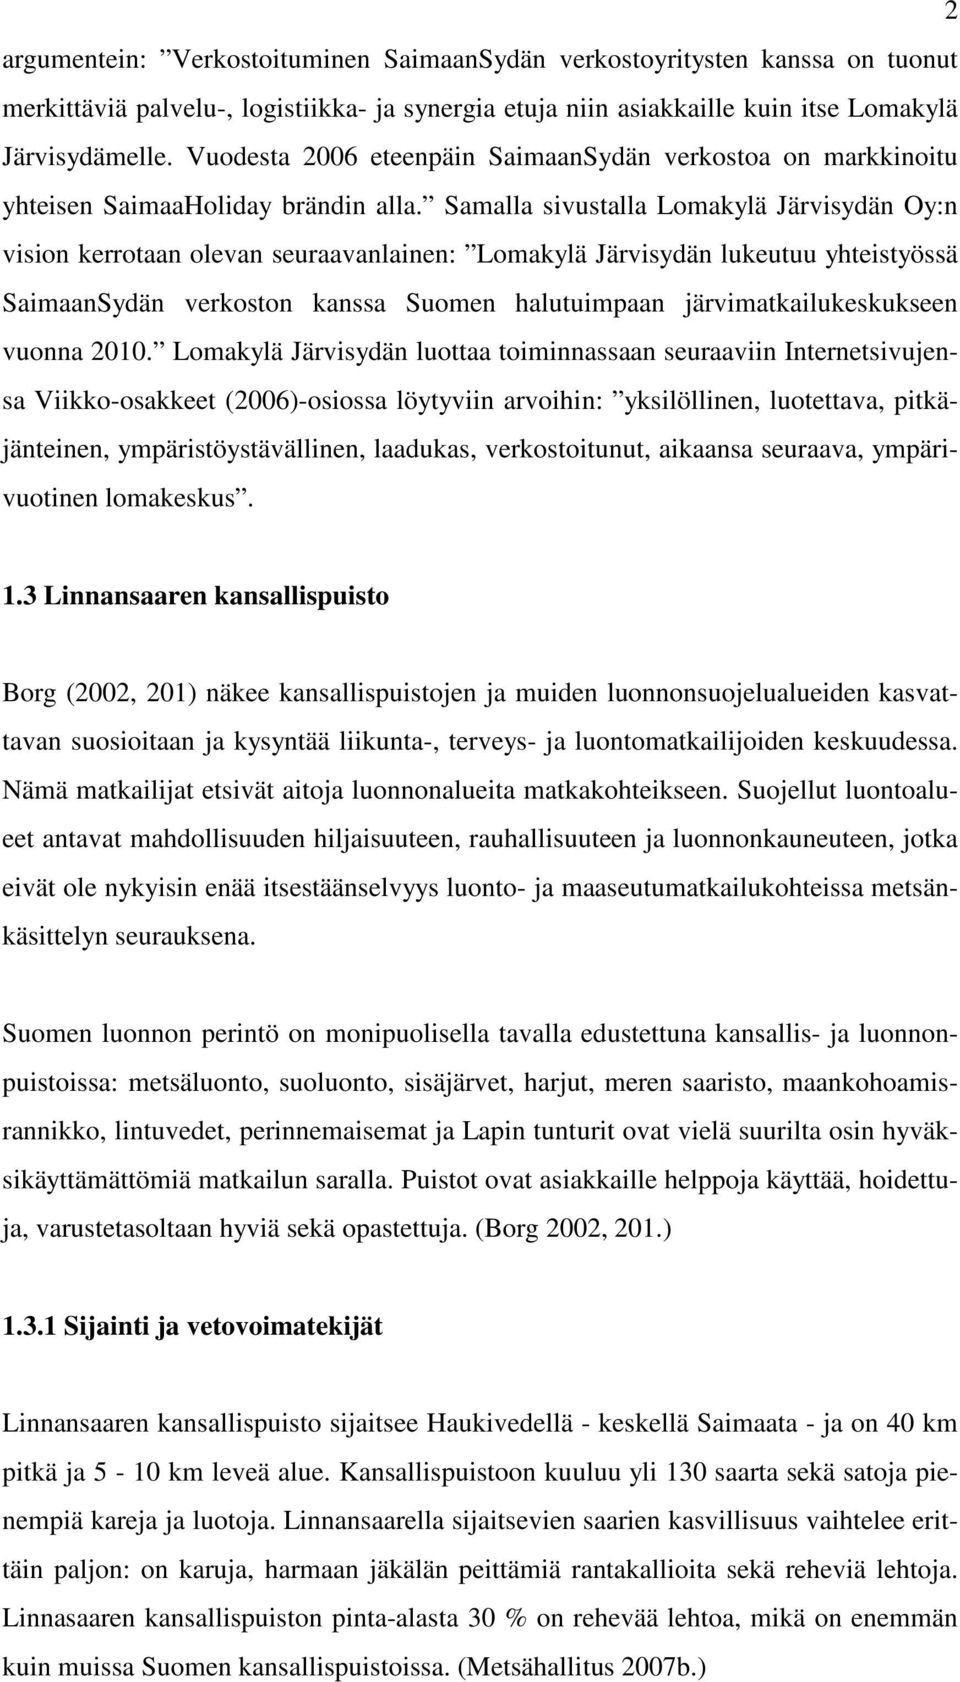 Samalla sivustalla Lomakylä Järvisydän Oy:n vision kerrotaan olevan seuraavanlainen: Lomakylä Järvisydän lukeutuu yhteistyössä SaimaanSydän verkoston kanssa Suomen halutuimpaan